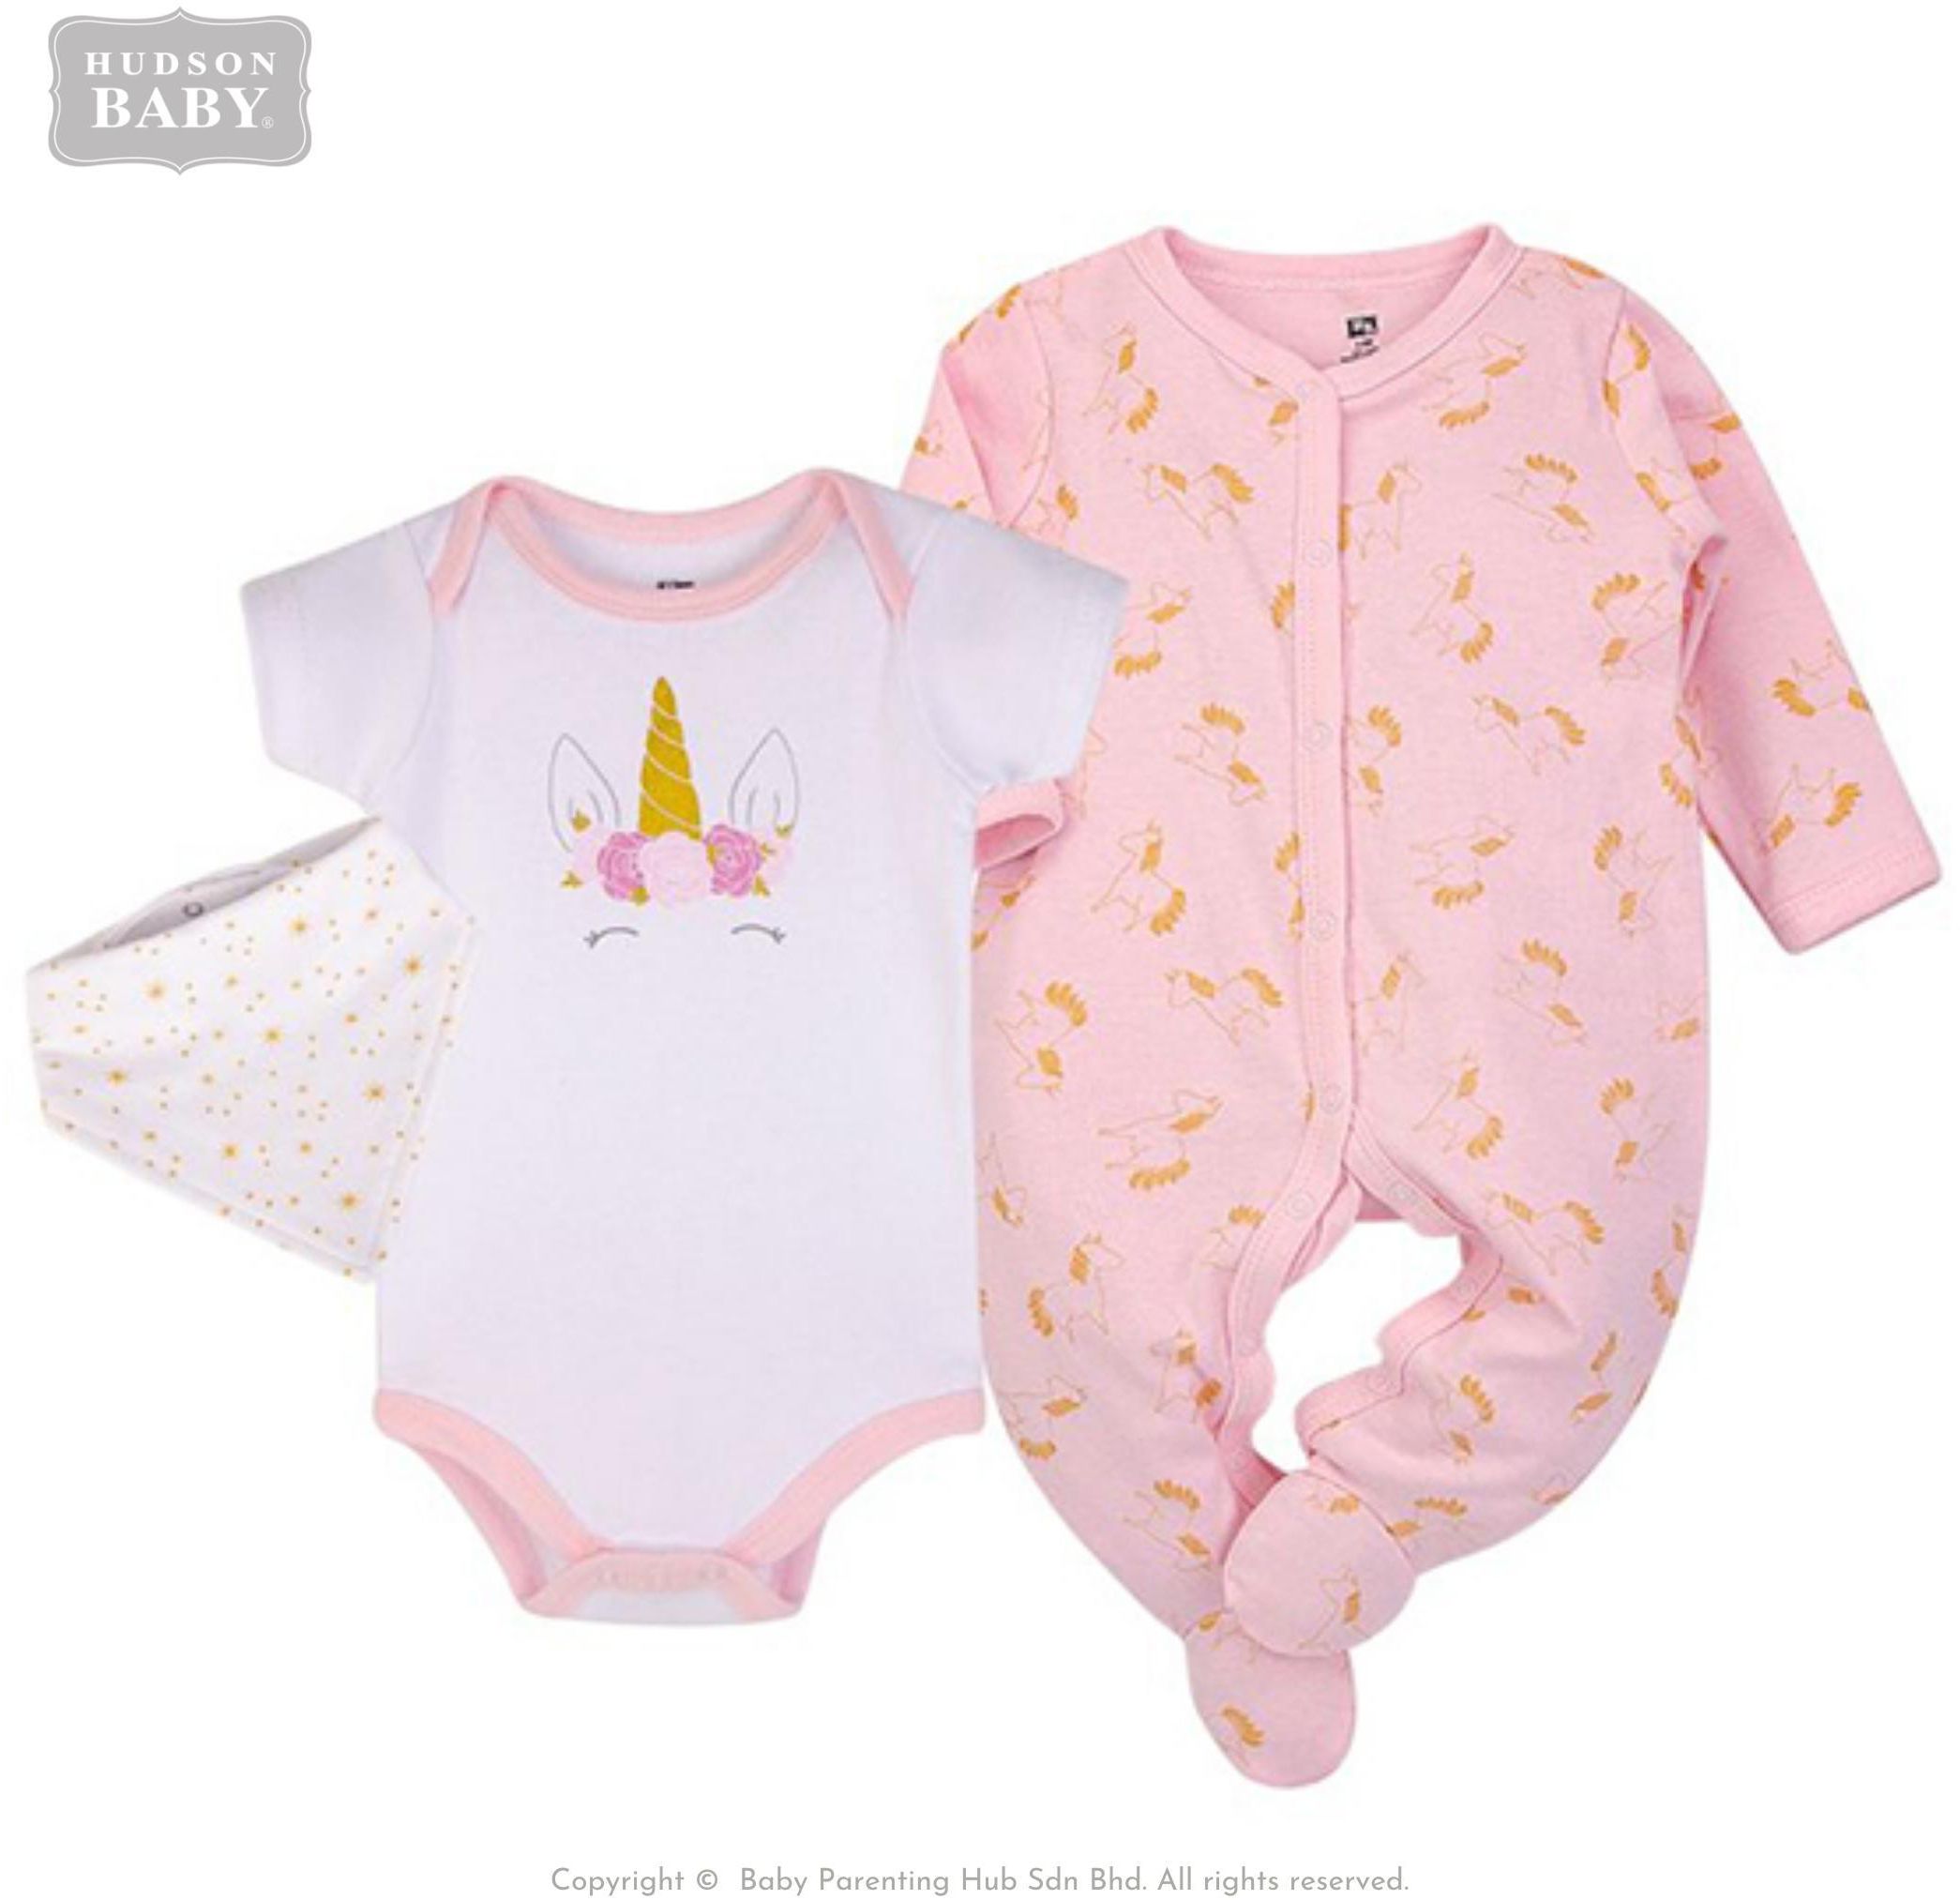 Hudson Baby Bodysuit and Bandana Bib with Sleep &amp; Play Set - 3 Sizes